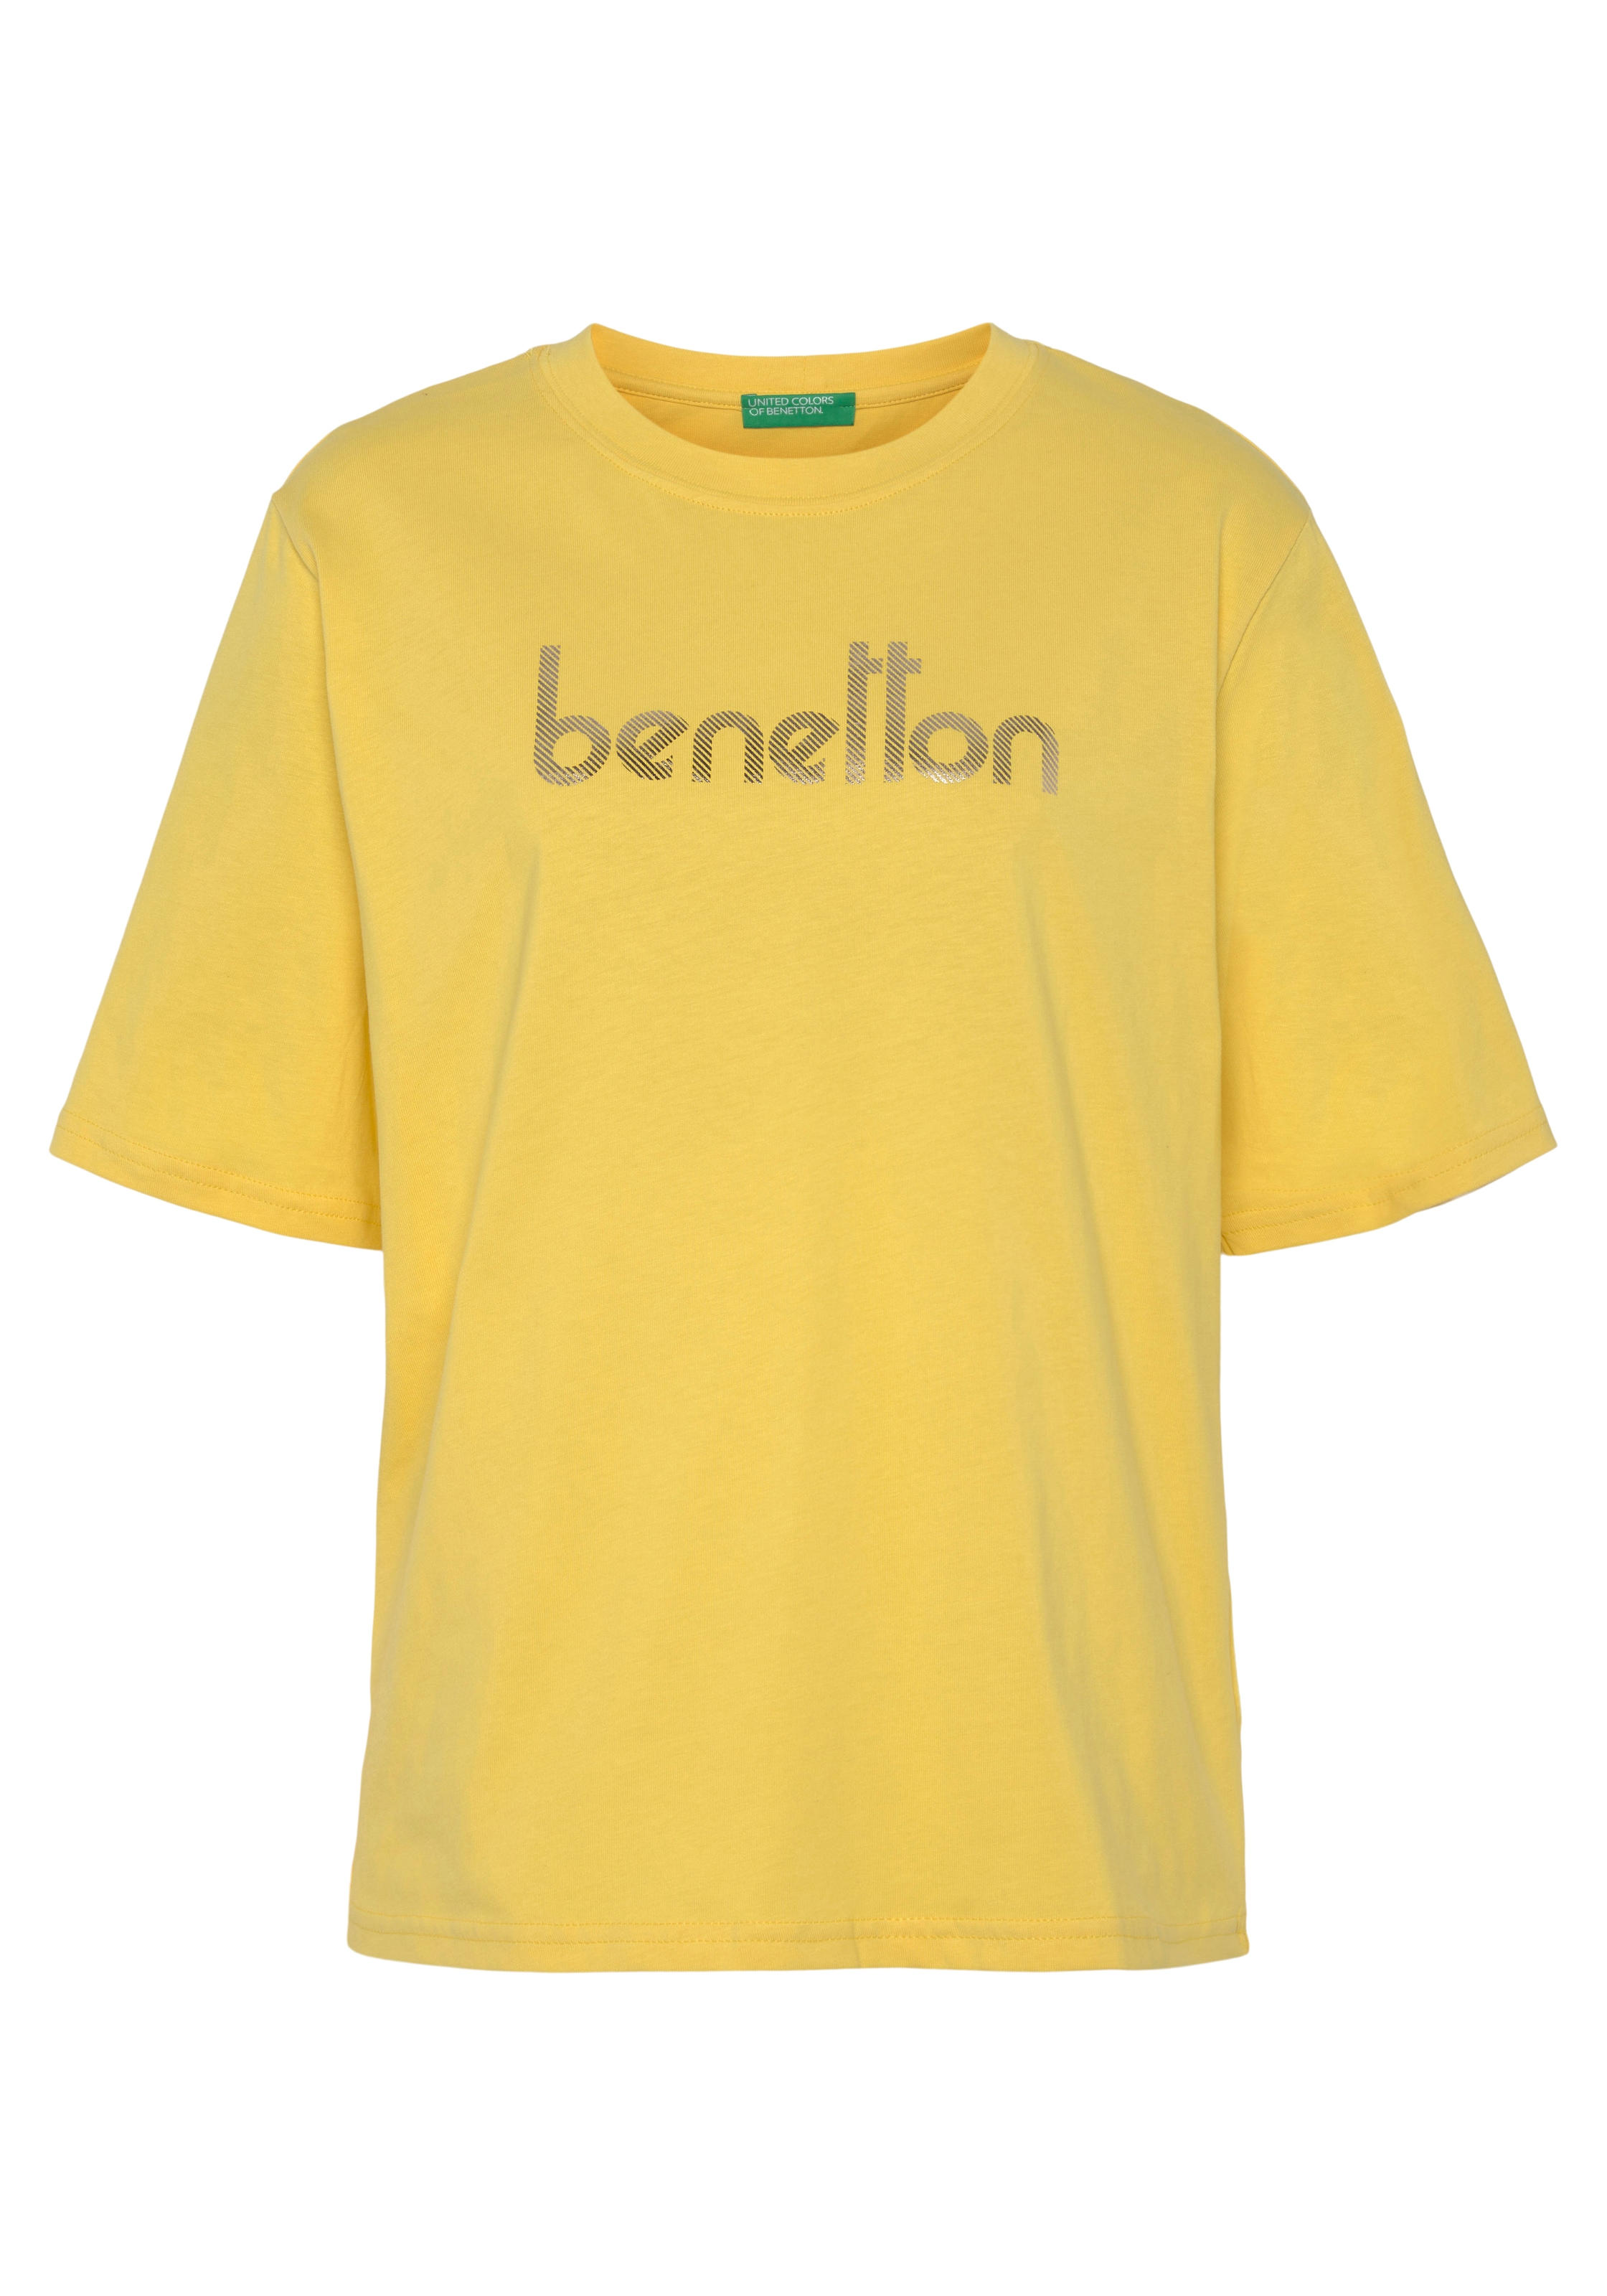 United Colors of Benetton T-Shirt, mit Logodruck auf der Brust